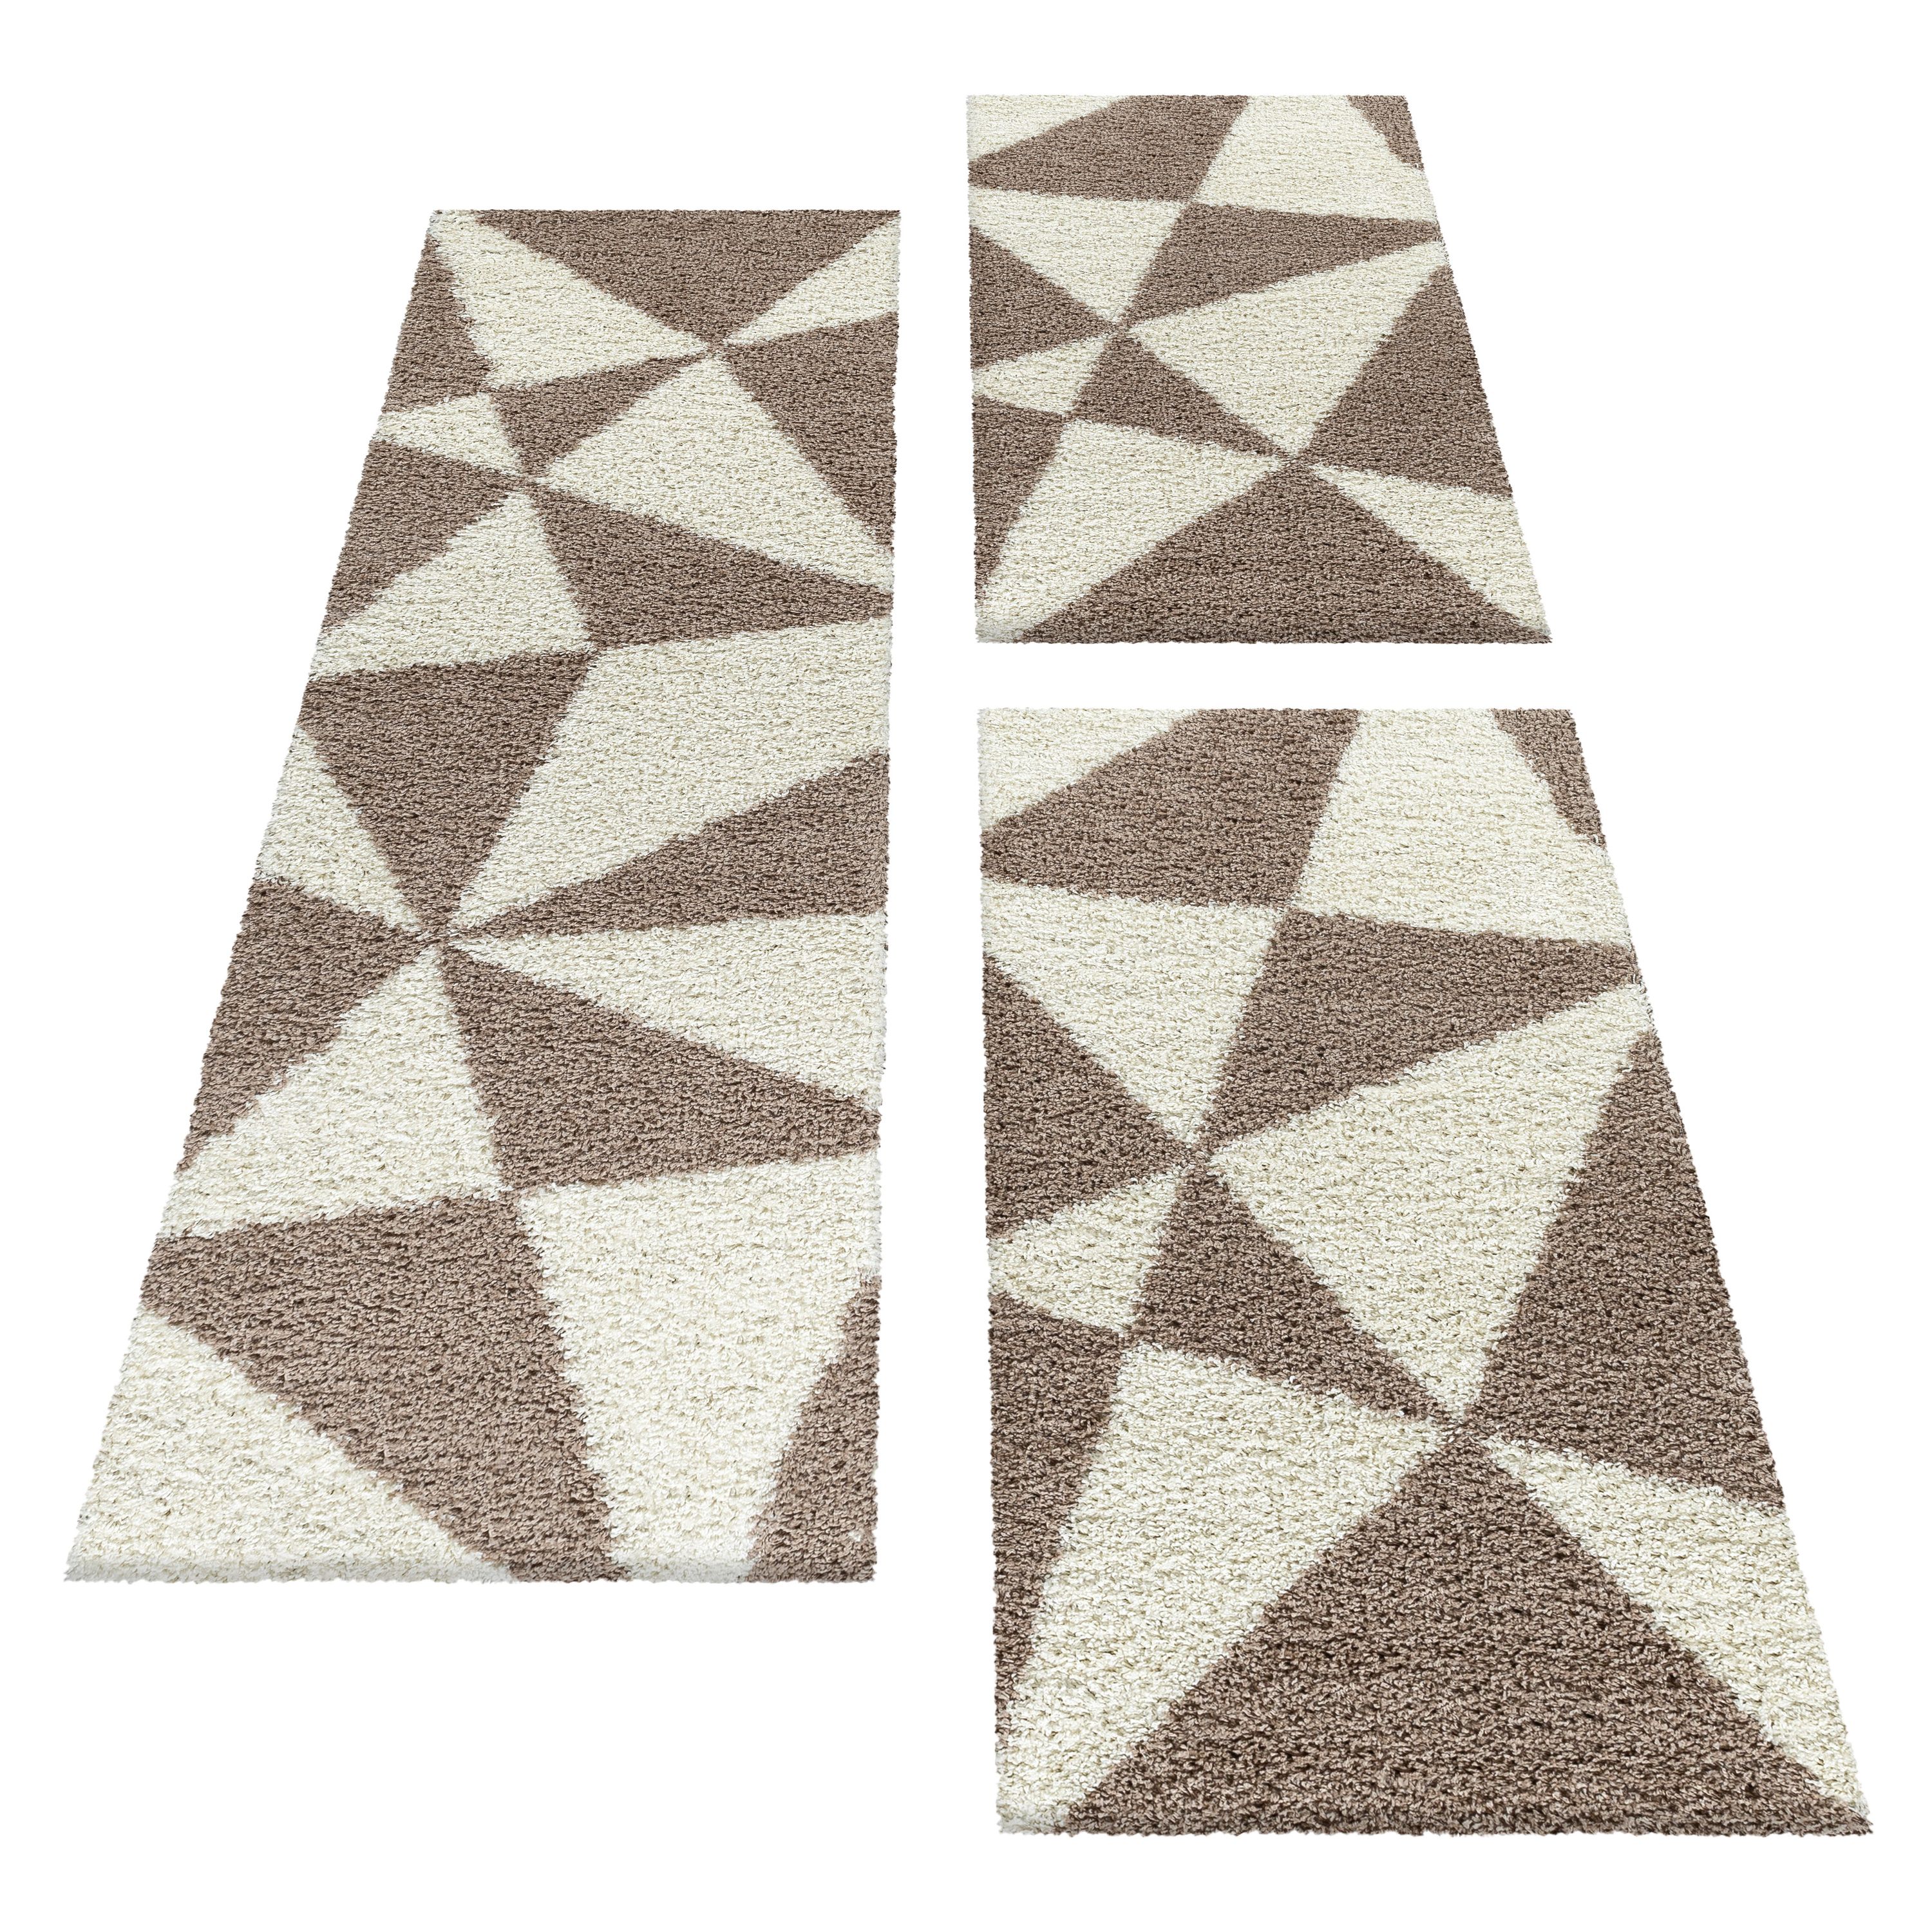 Design Teppich Set Shaggy Bettumrandung Läufer Set Muster Dreiecke 3 Teile Beige